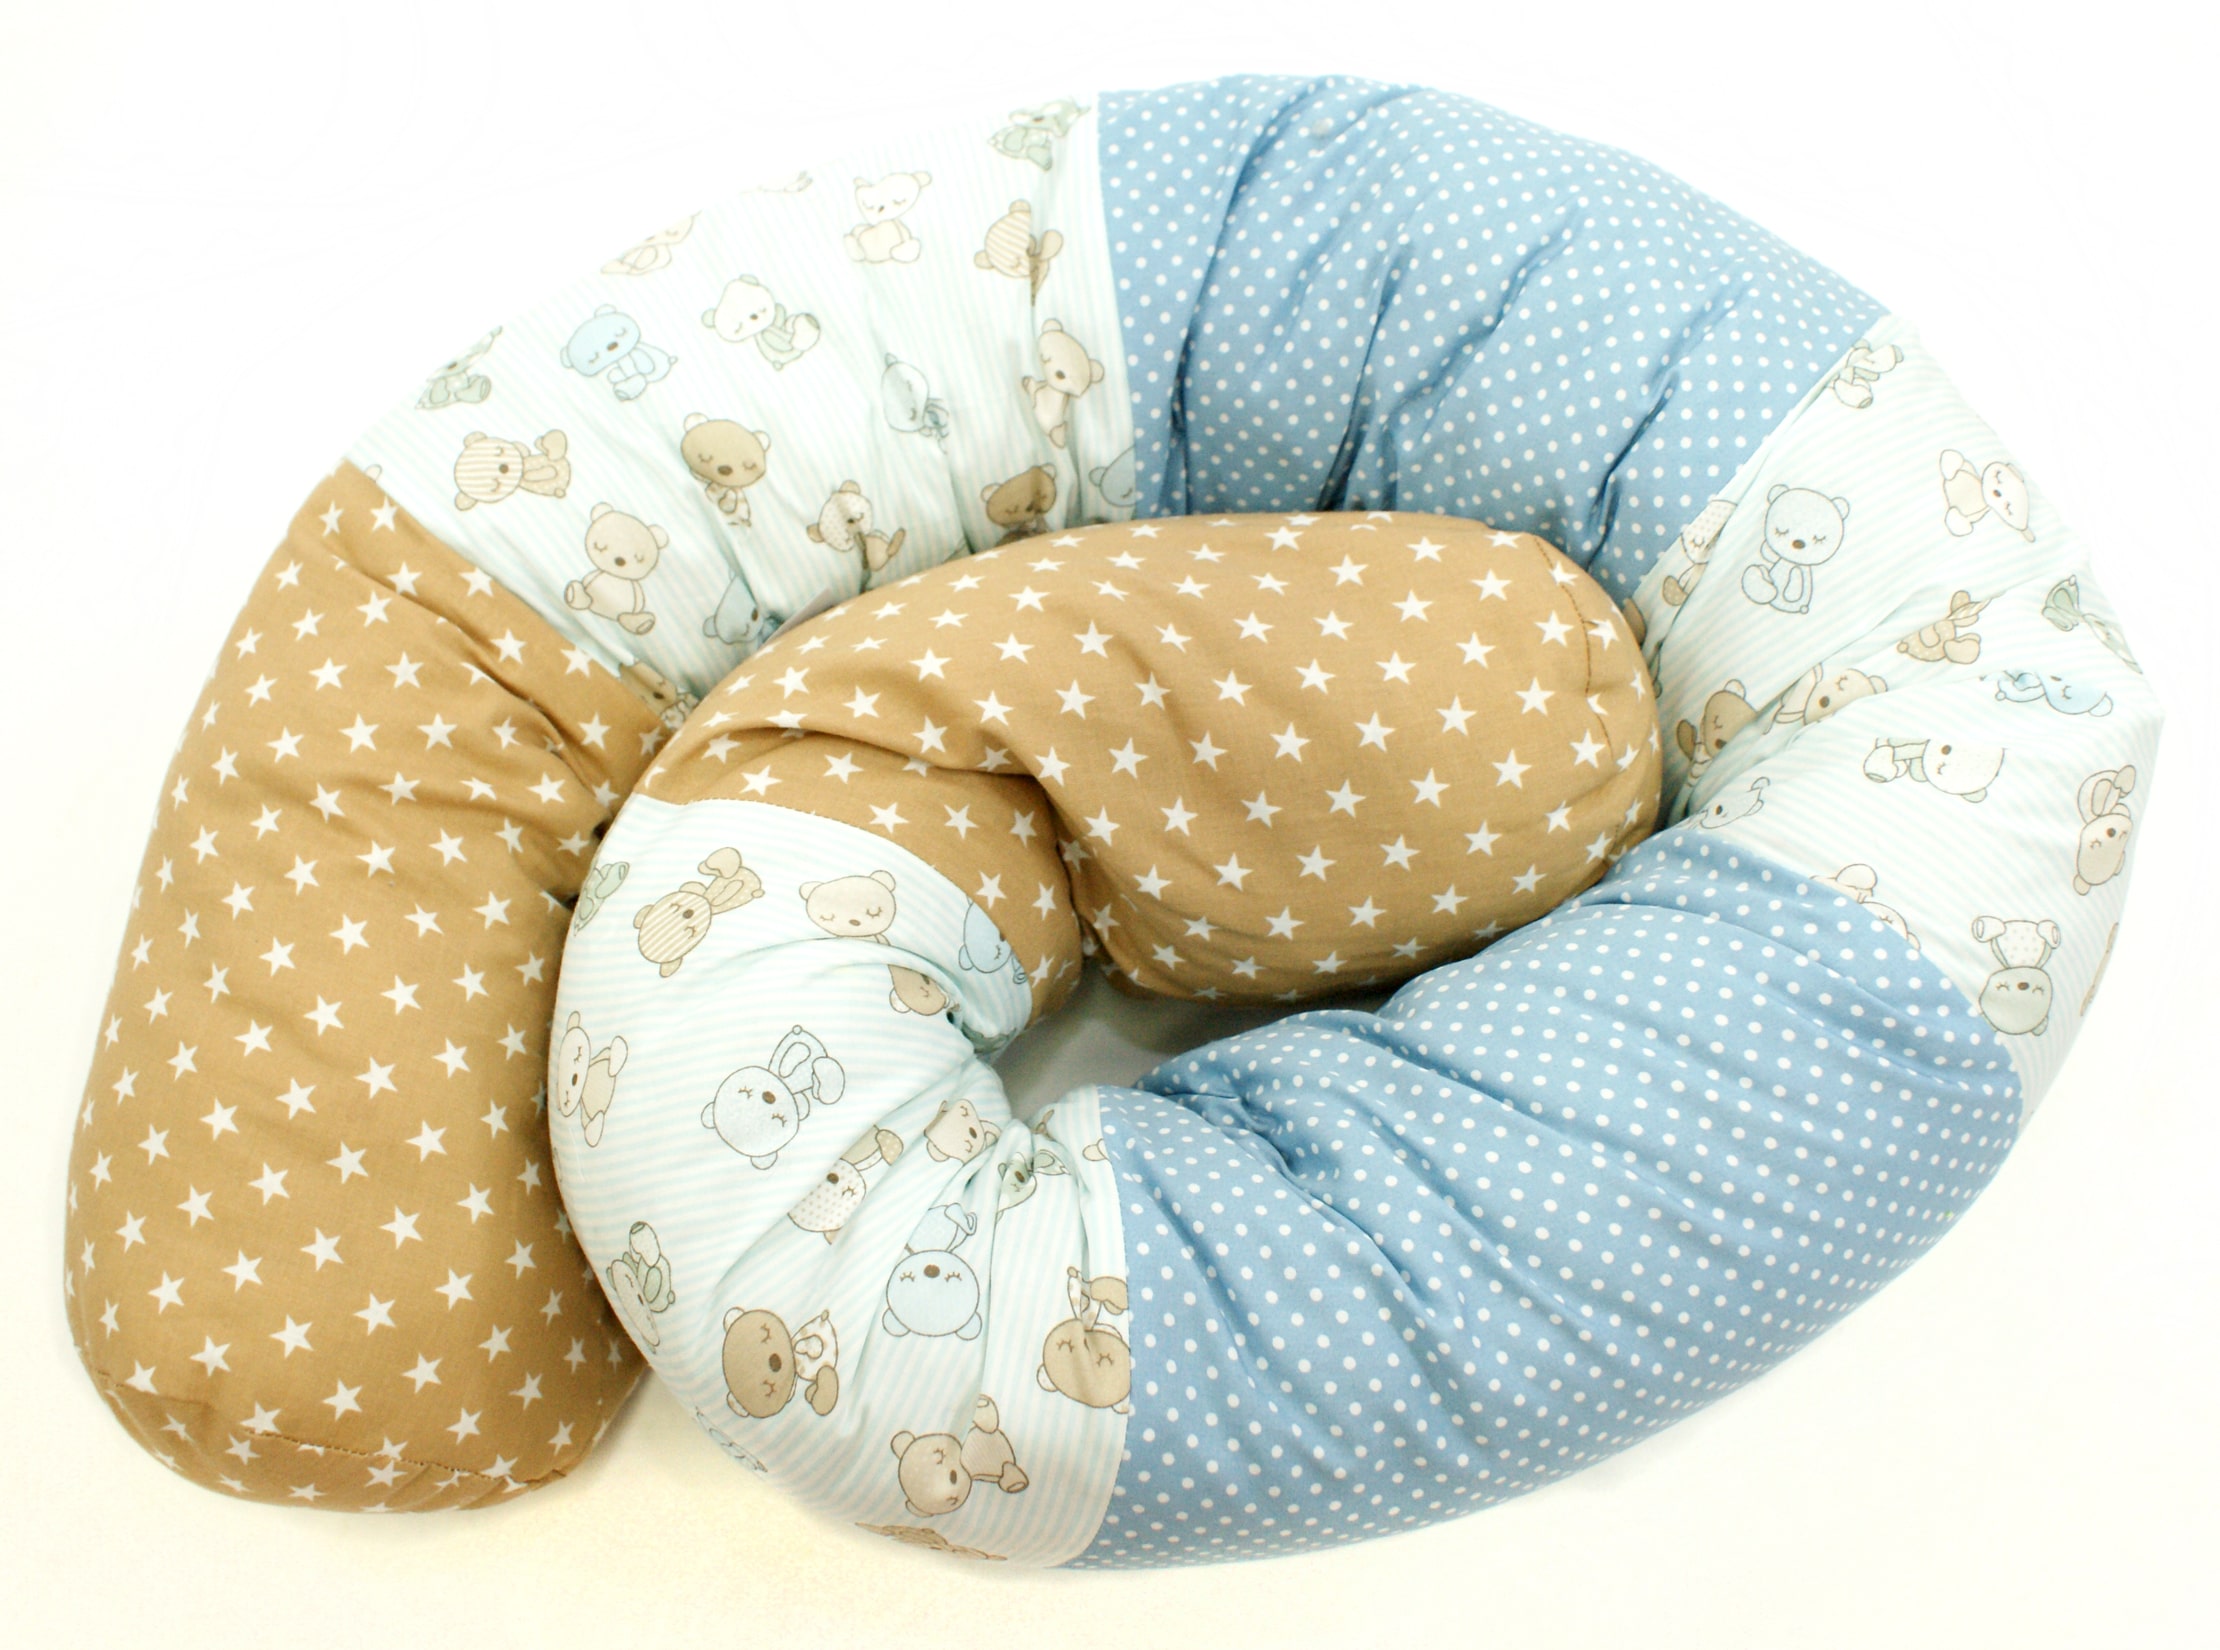 Baby Bettschlange Nestchen "Teddybär" hellblau beige